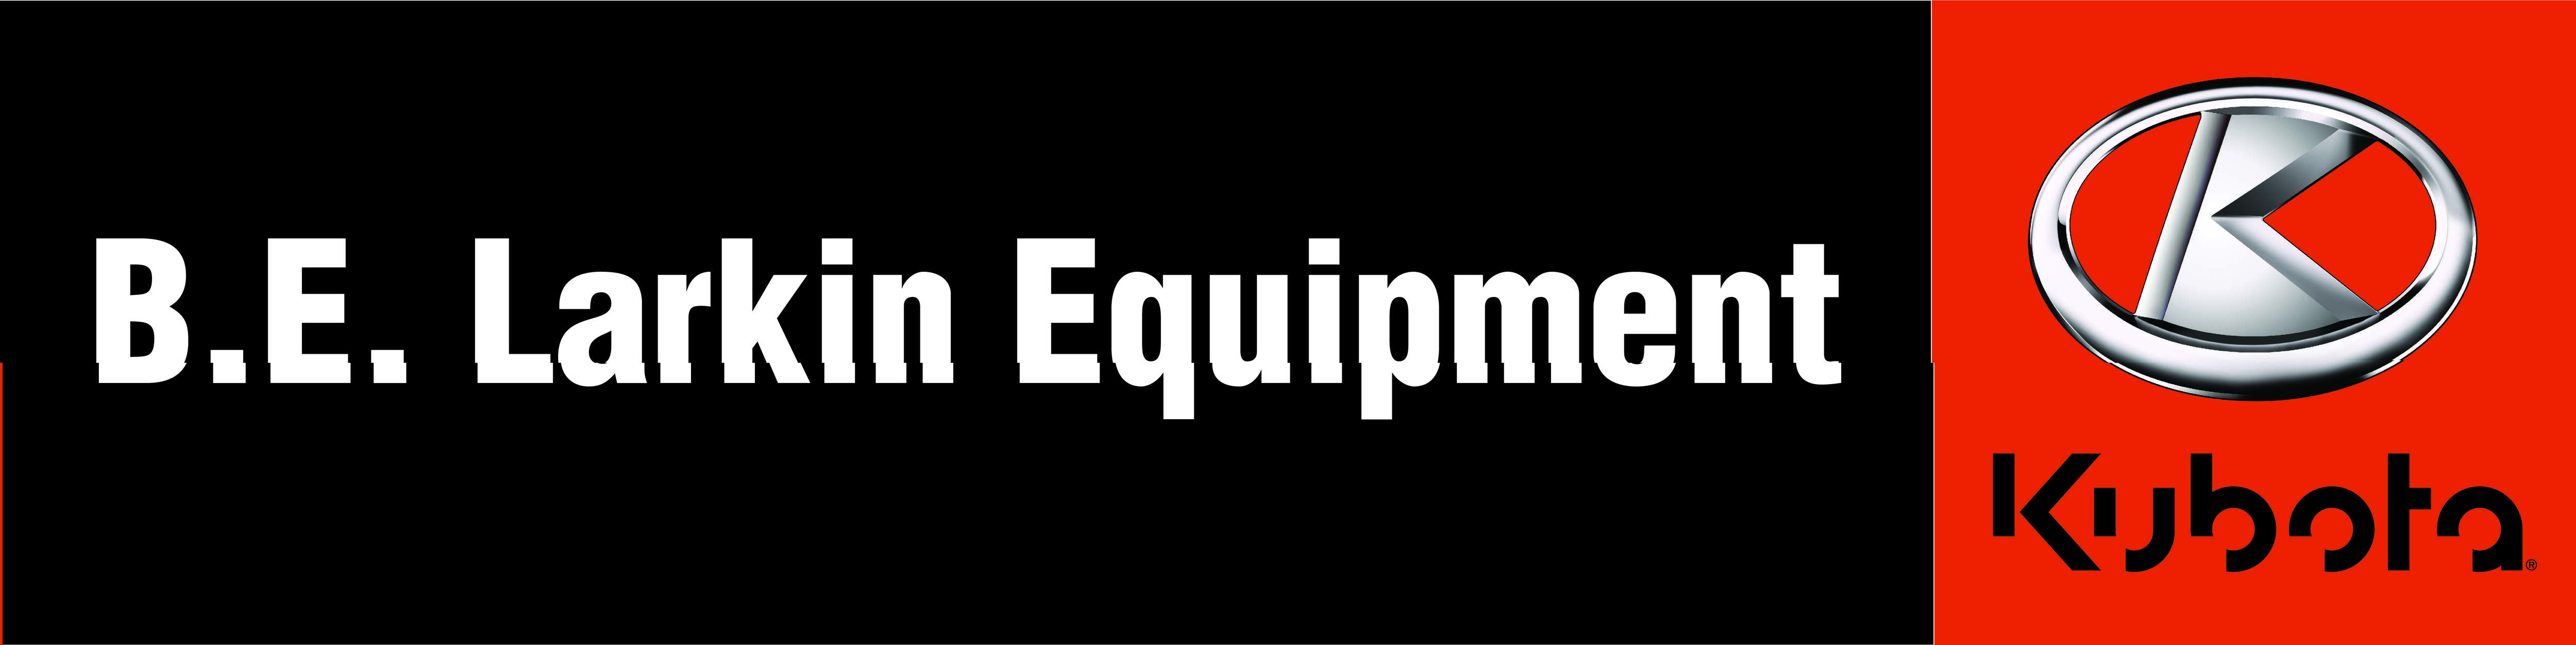 B. E. Larkin Equipment Ltd